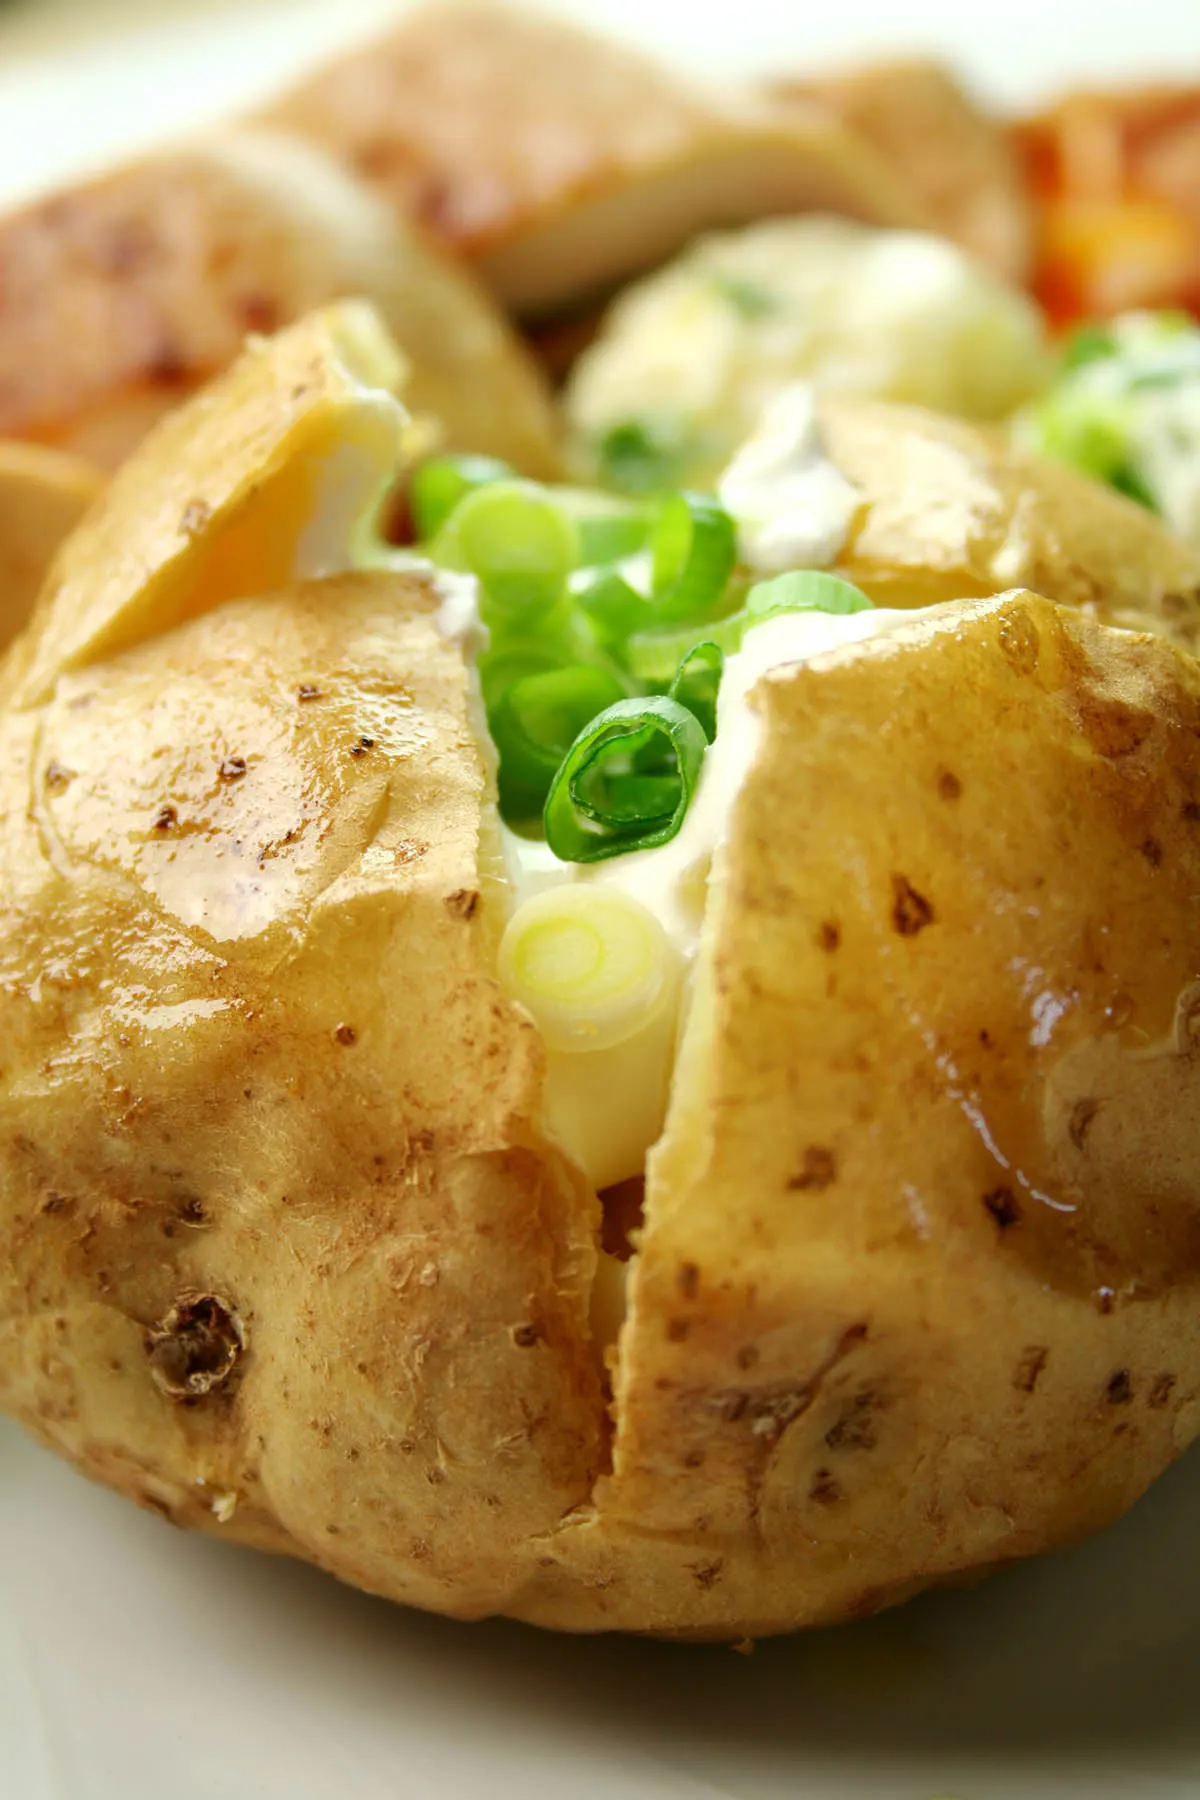 close-up of a stuffed baked potato